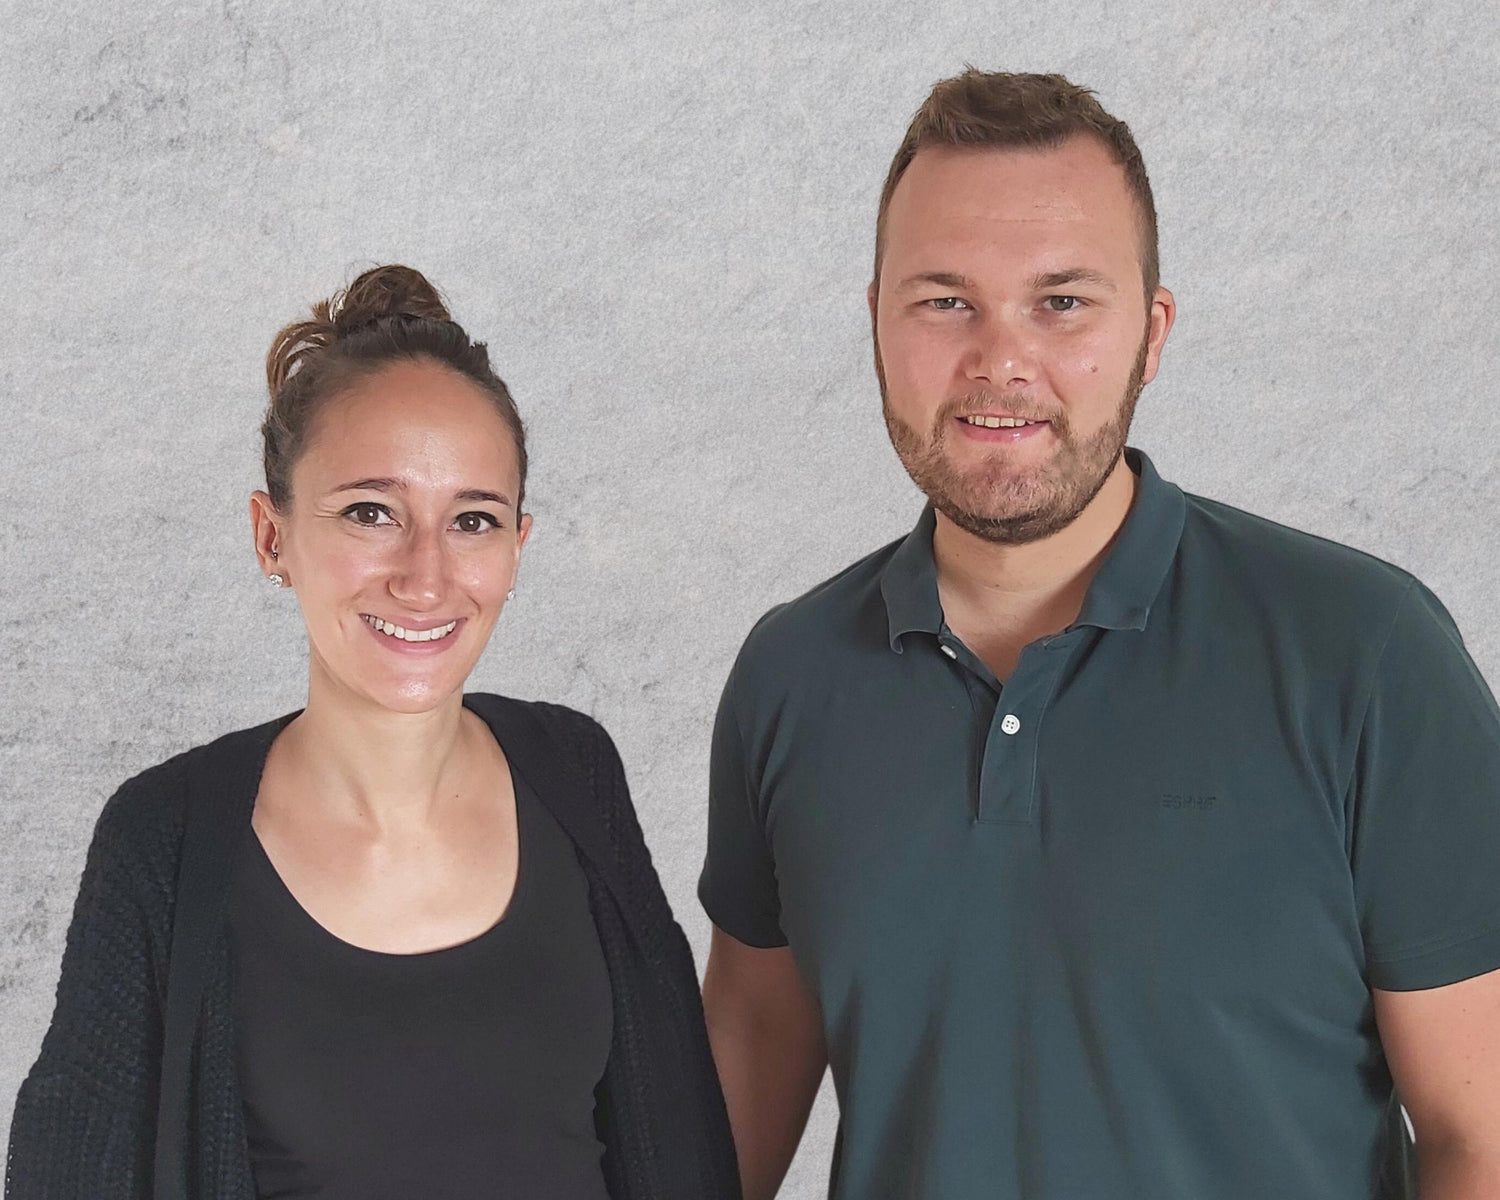 Rebekka und Sebastian: Die Gründer von HiLo sports